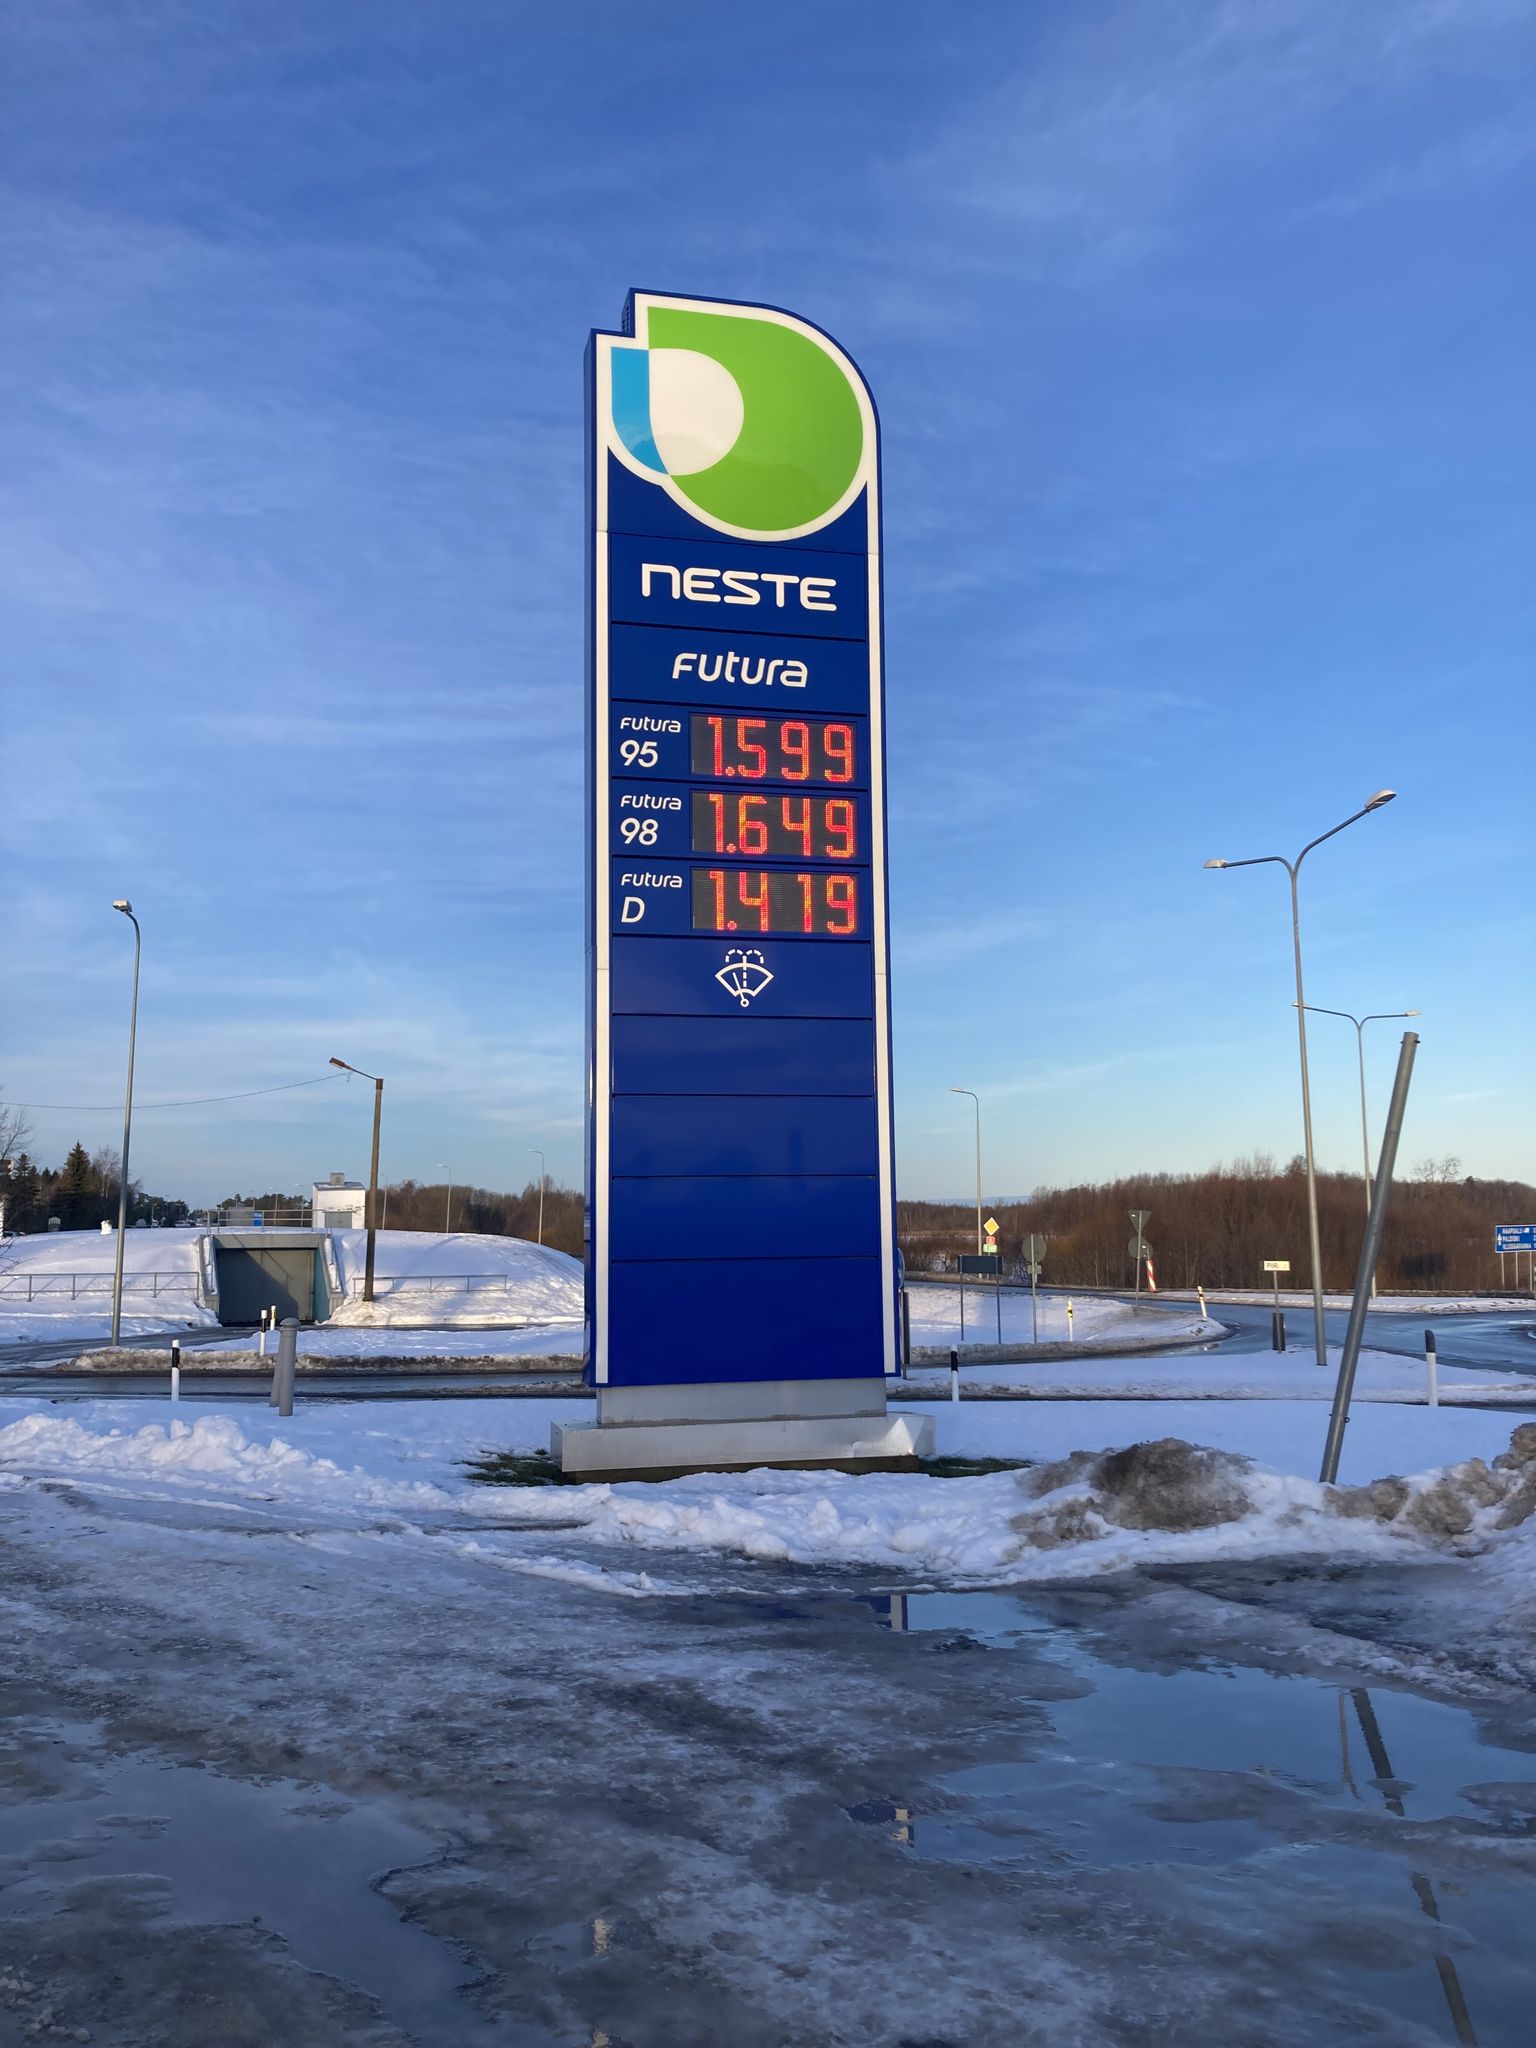 Kütusehinnad Neste tanklates